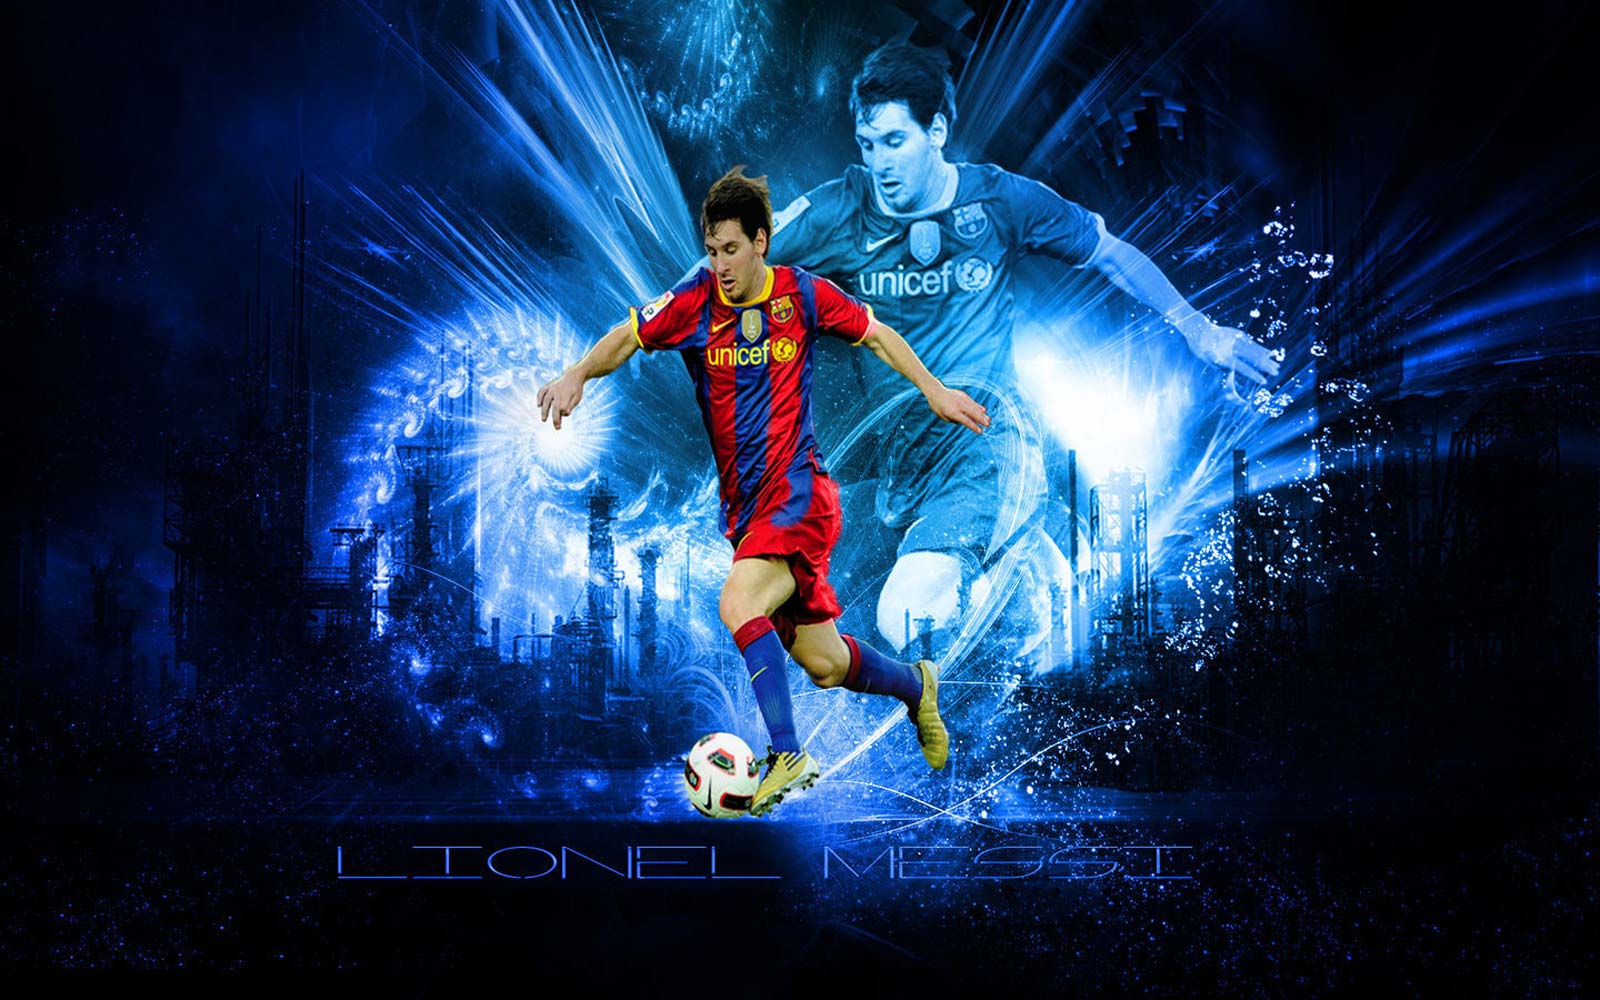 http://4.bp.blogspot.com/-gvQXOMWVJXQ/UKFMPITakjI/AAAAAAAAISw/KJXB6u8gfWY/s1600/Lionel_Messi_Barcelona.jpg